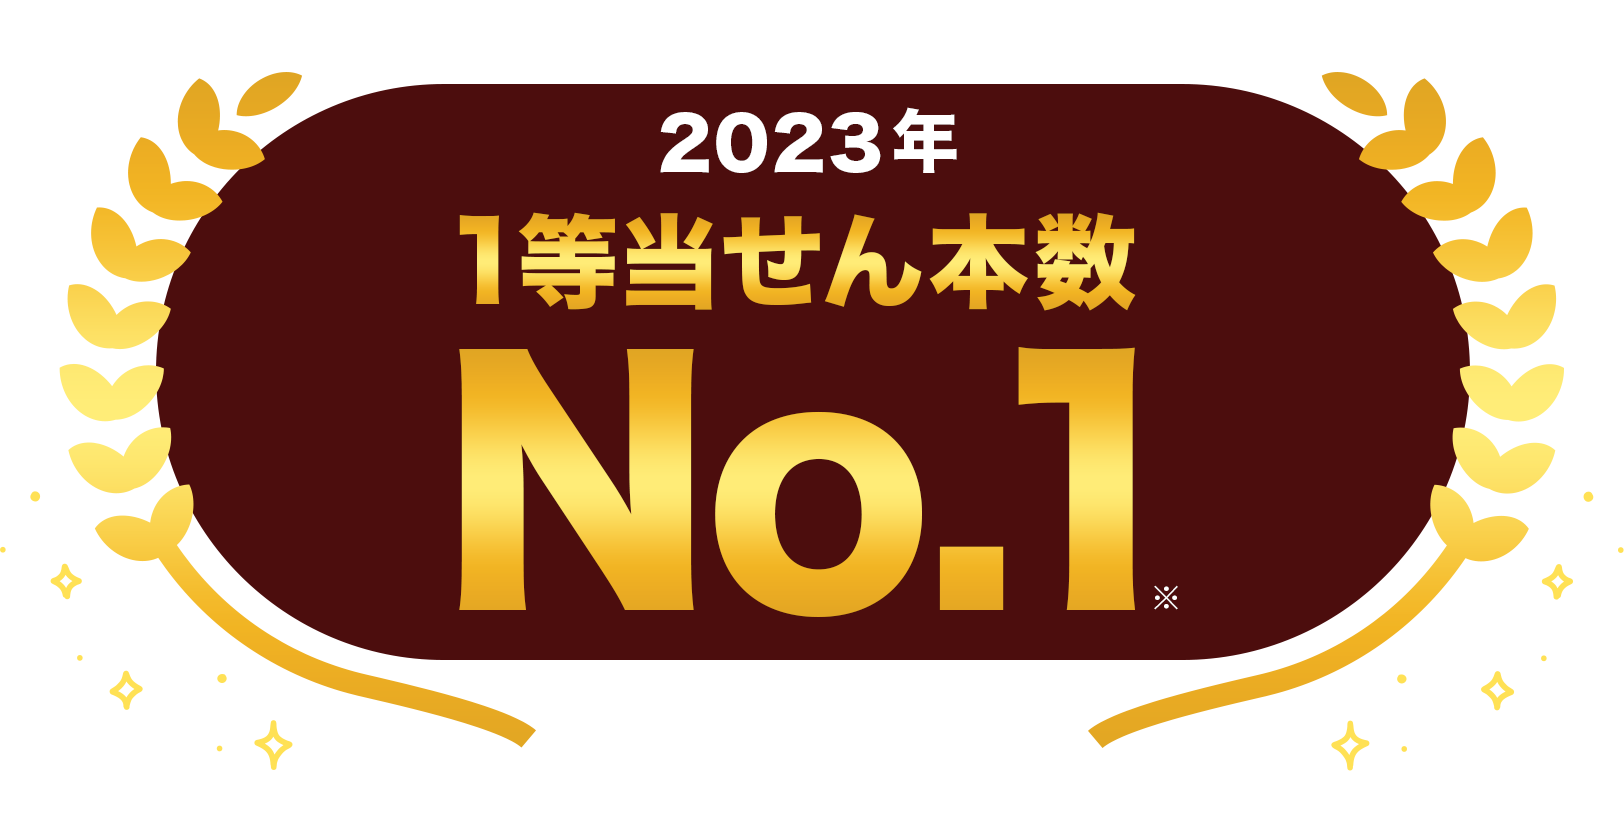 楽天グループはMEGA BIGの2023年1等当せん本数No.1 ※スポーツくじ公式サイトの情報に基づき当社調べ